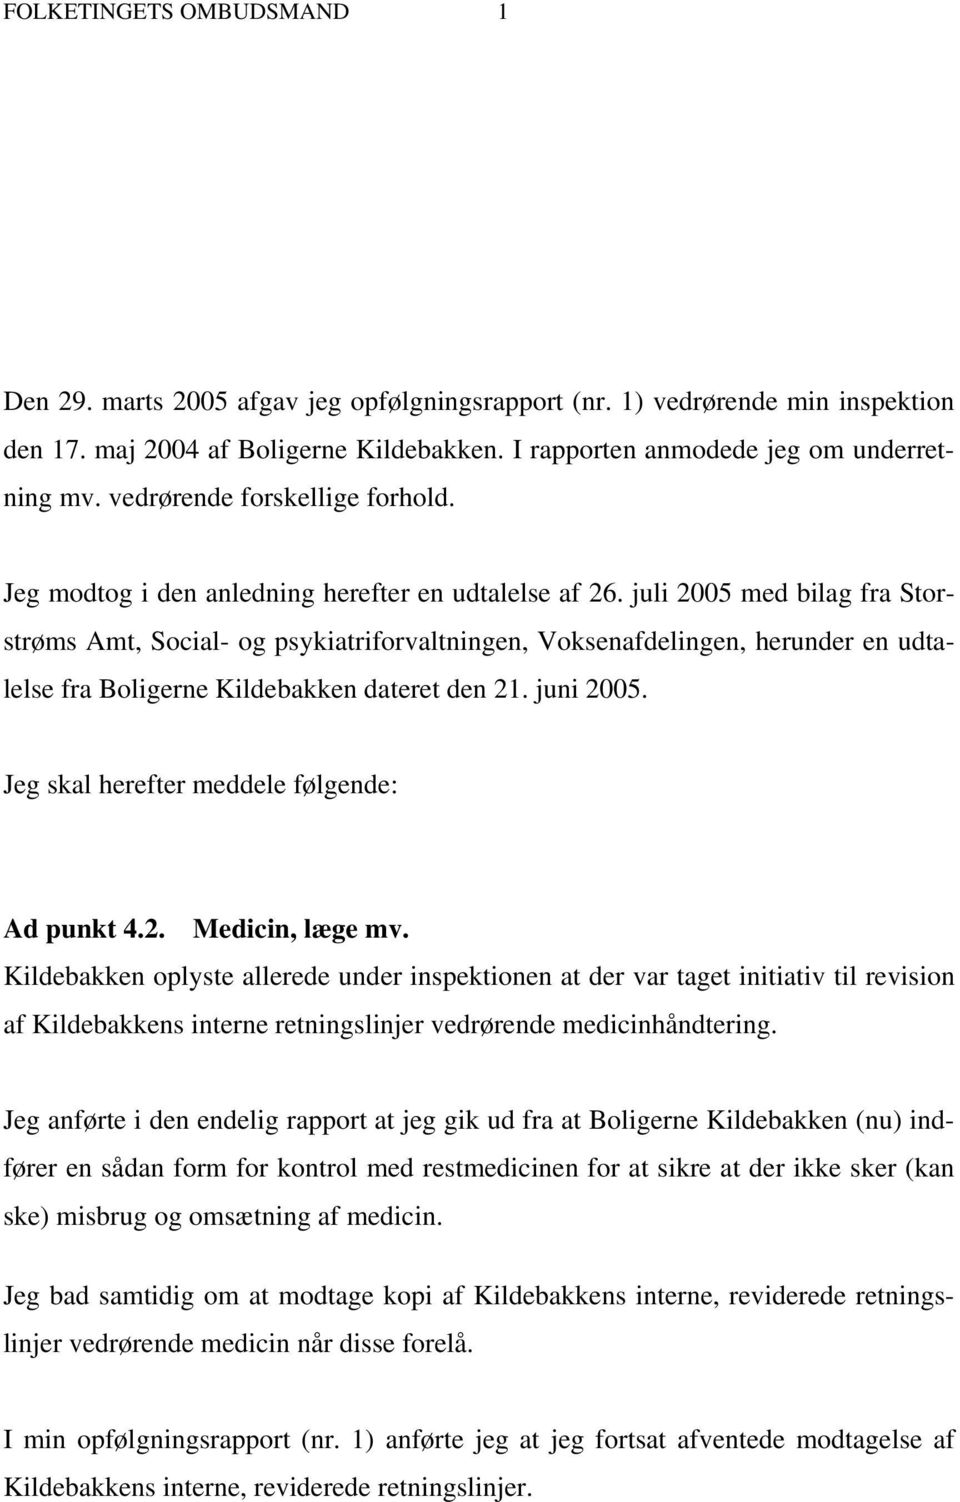 juli 2005 med bilag fra Storstrøms Amt, Social- og psykiatriforvaltningen, Voksenafdelingen, herunder en udtalelse fra Boligerne Kildebakken dateret den 21. juni 2005.